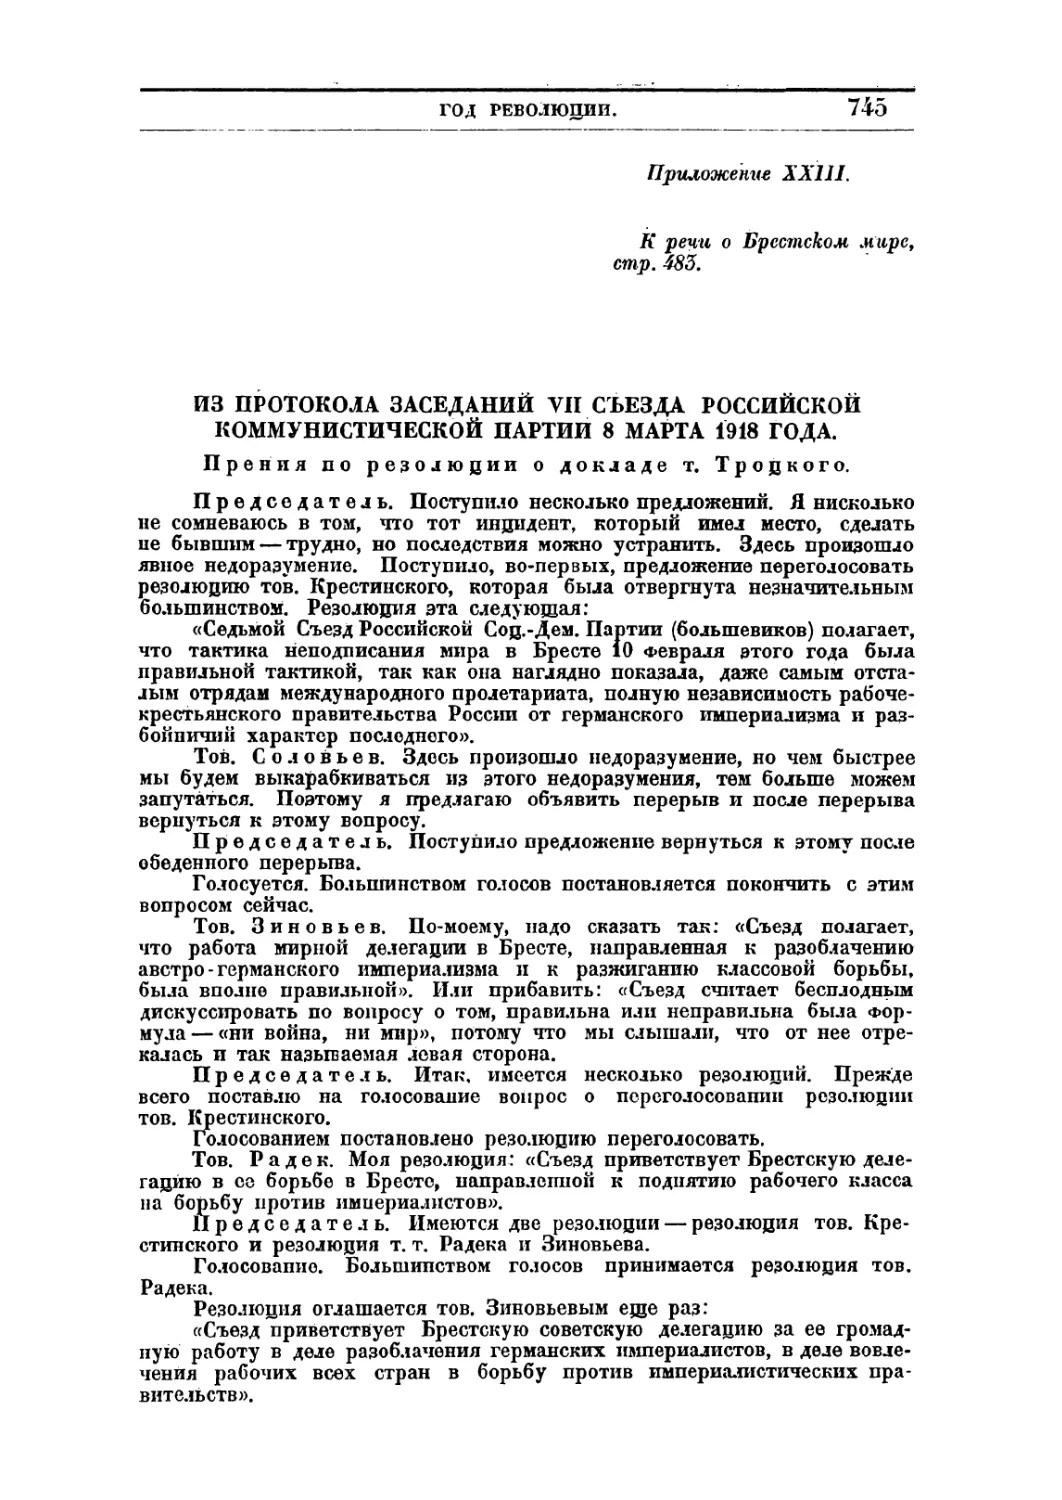 ИЗ ПРОТОКОЛА ЗАСЕДАНИЙ VII СЪЕЗДА РОССИЙСКОЙ КОММУНИСТИЧЕСКОЙ ПАРТИИ 8 МАРТА 1918 ГОДА.